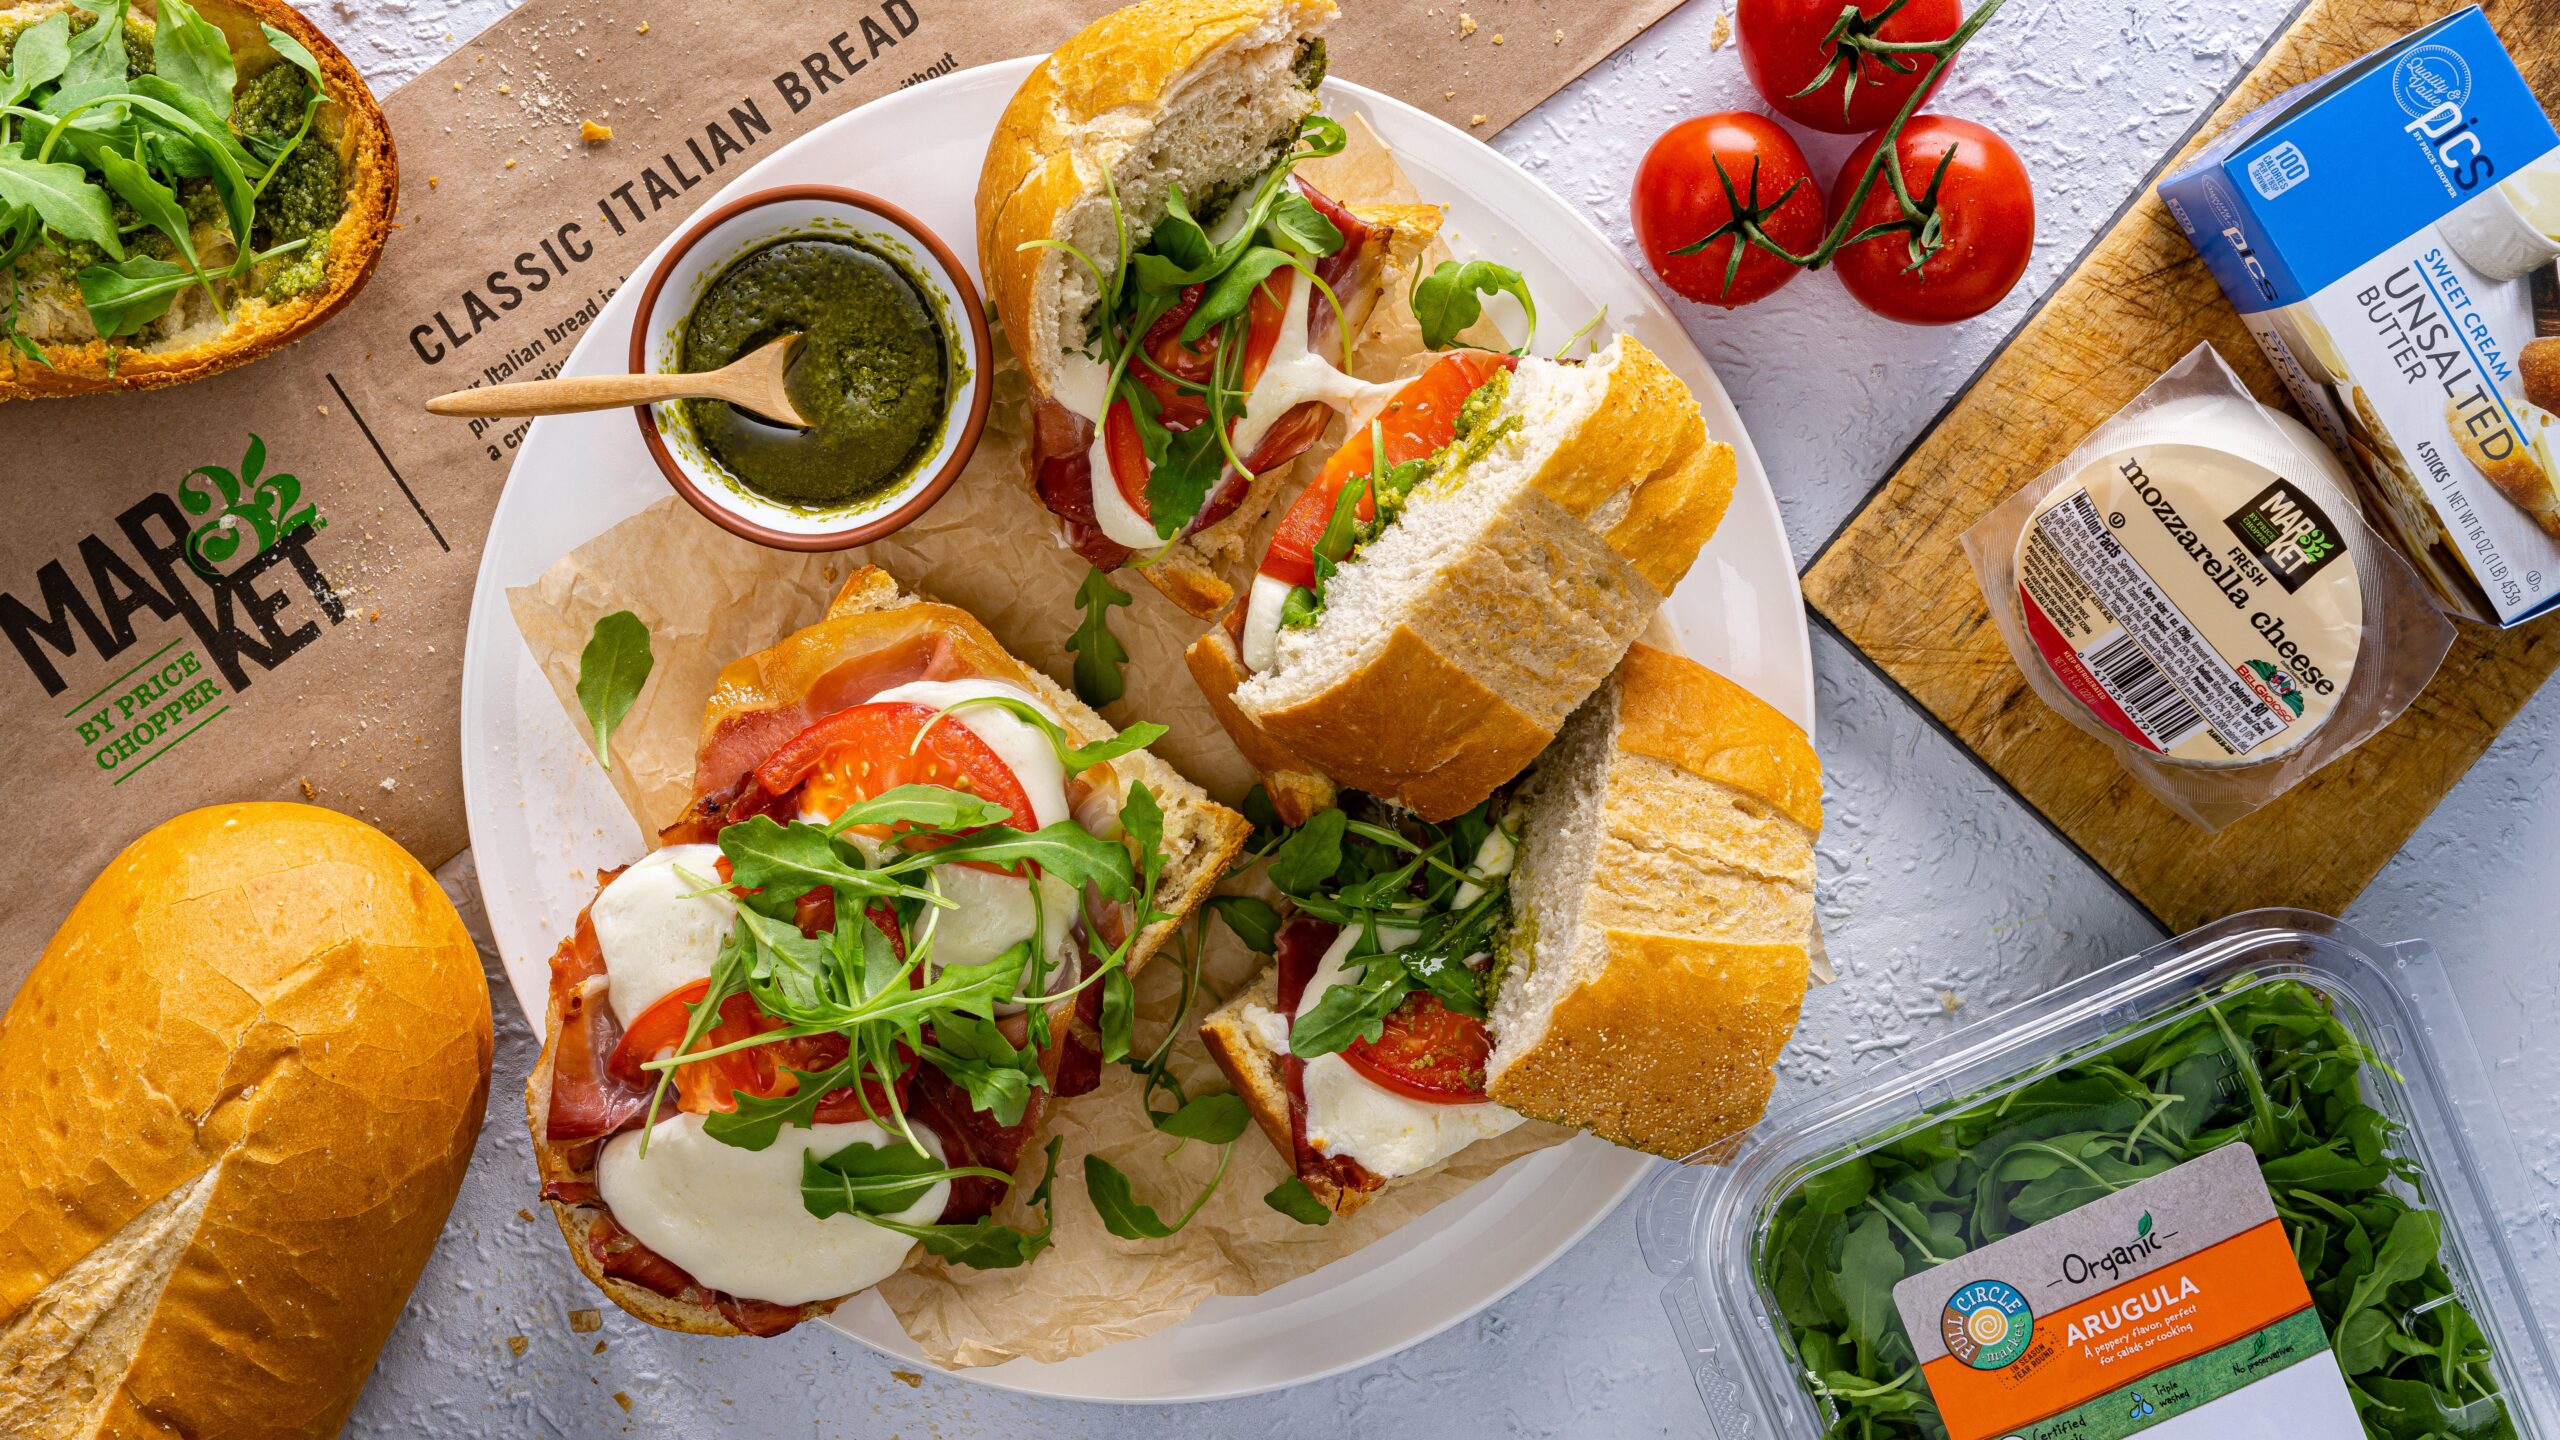 Sandwich - Italian bread